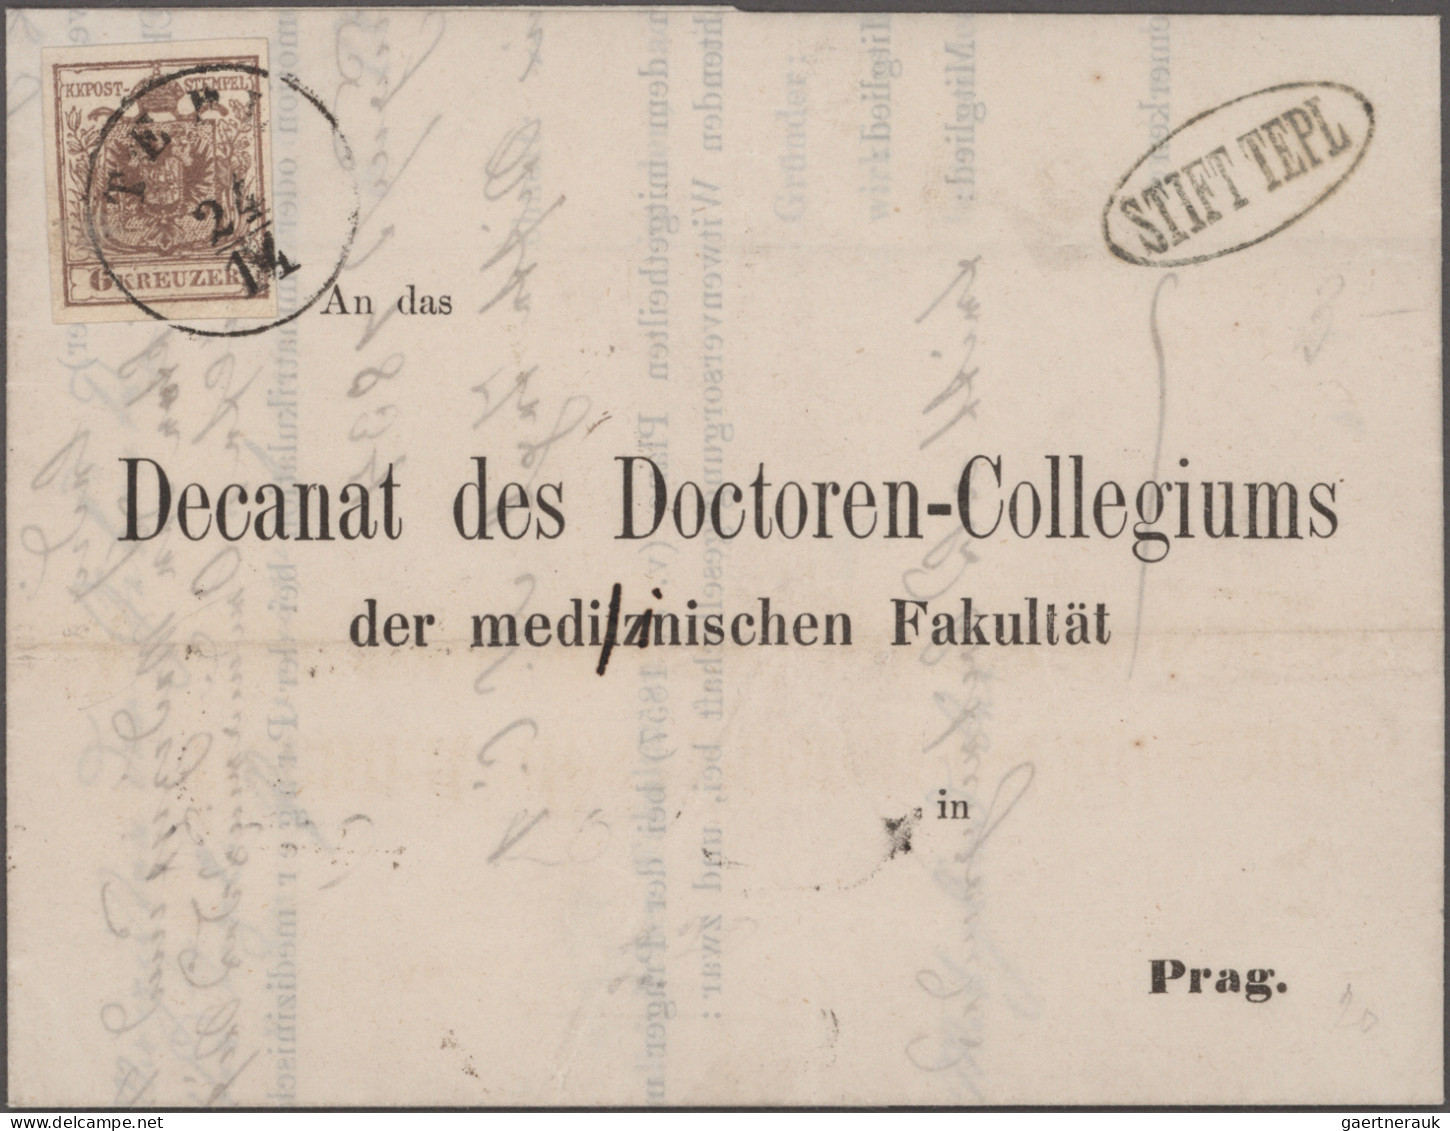 Österreich: 1850/1852, Lot von 7 frankierten Briefen, dabei 4 Belege mit Verwend